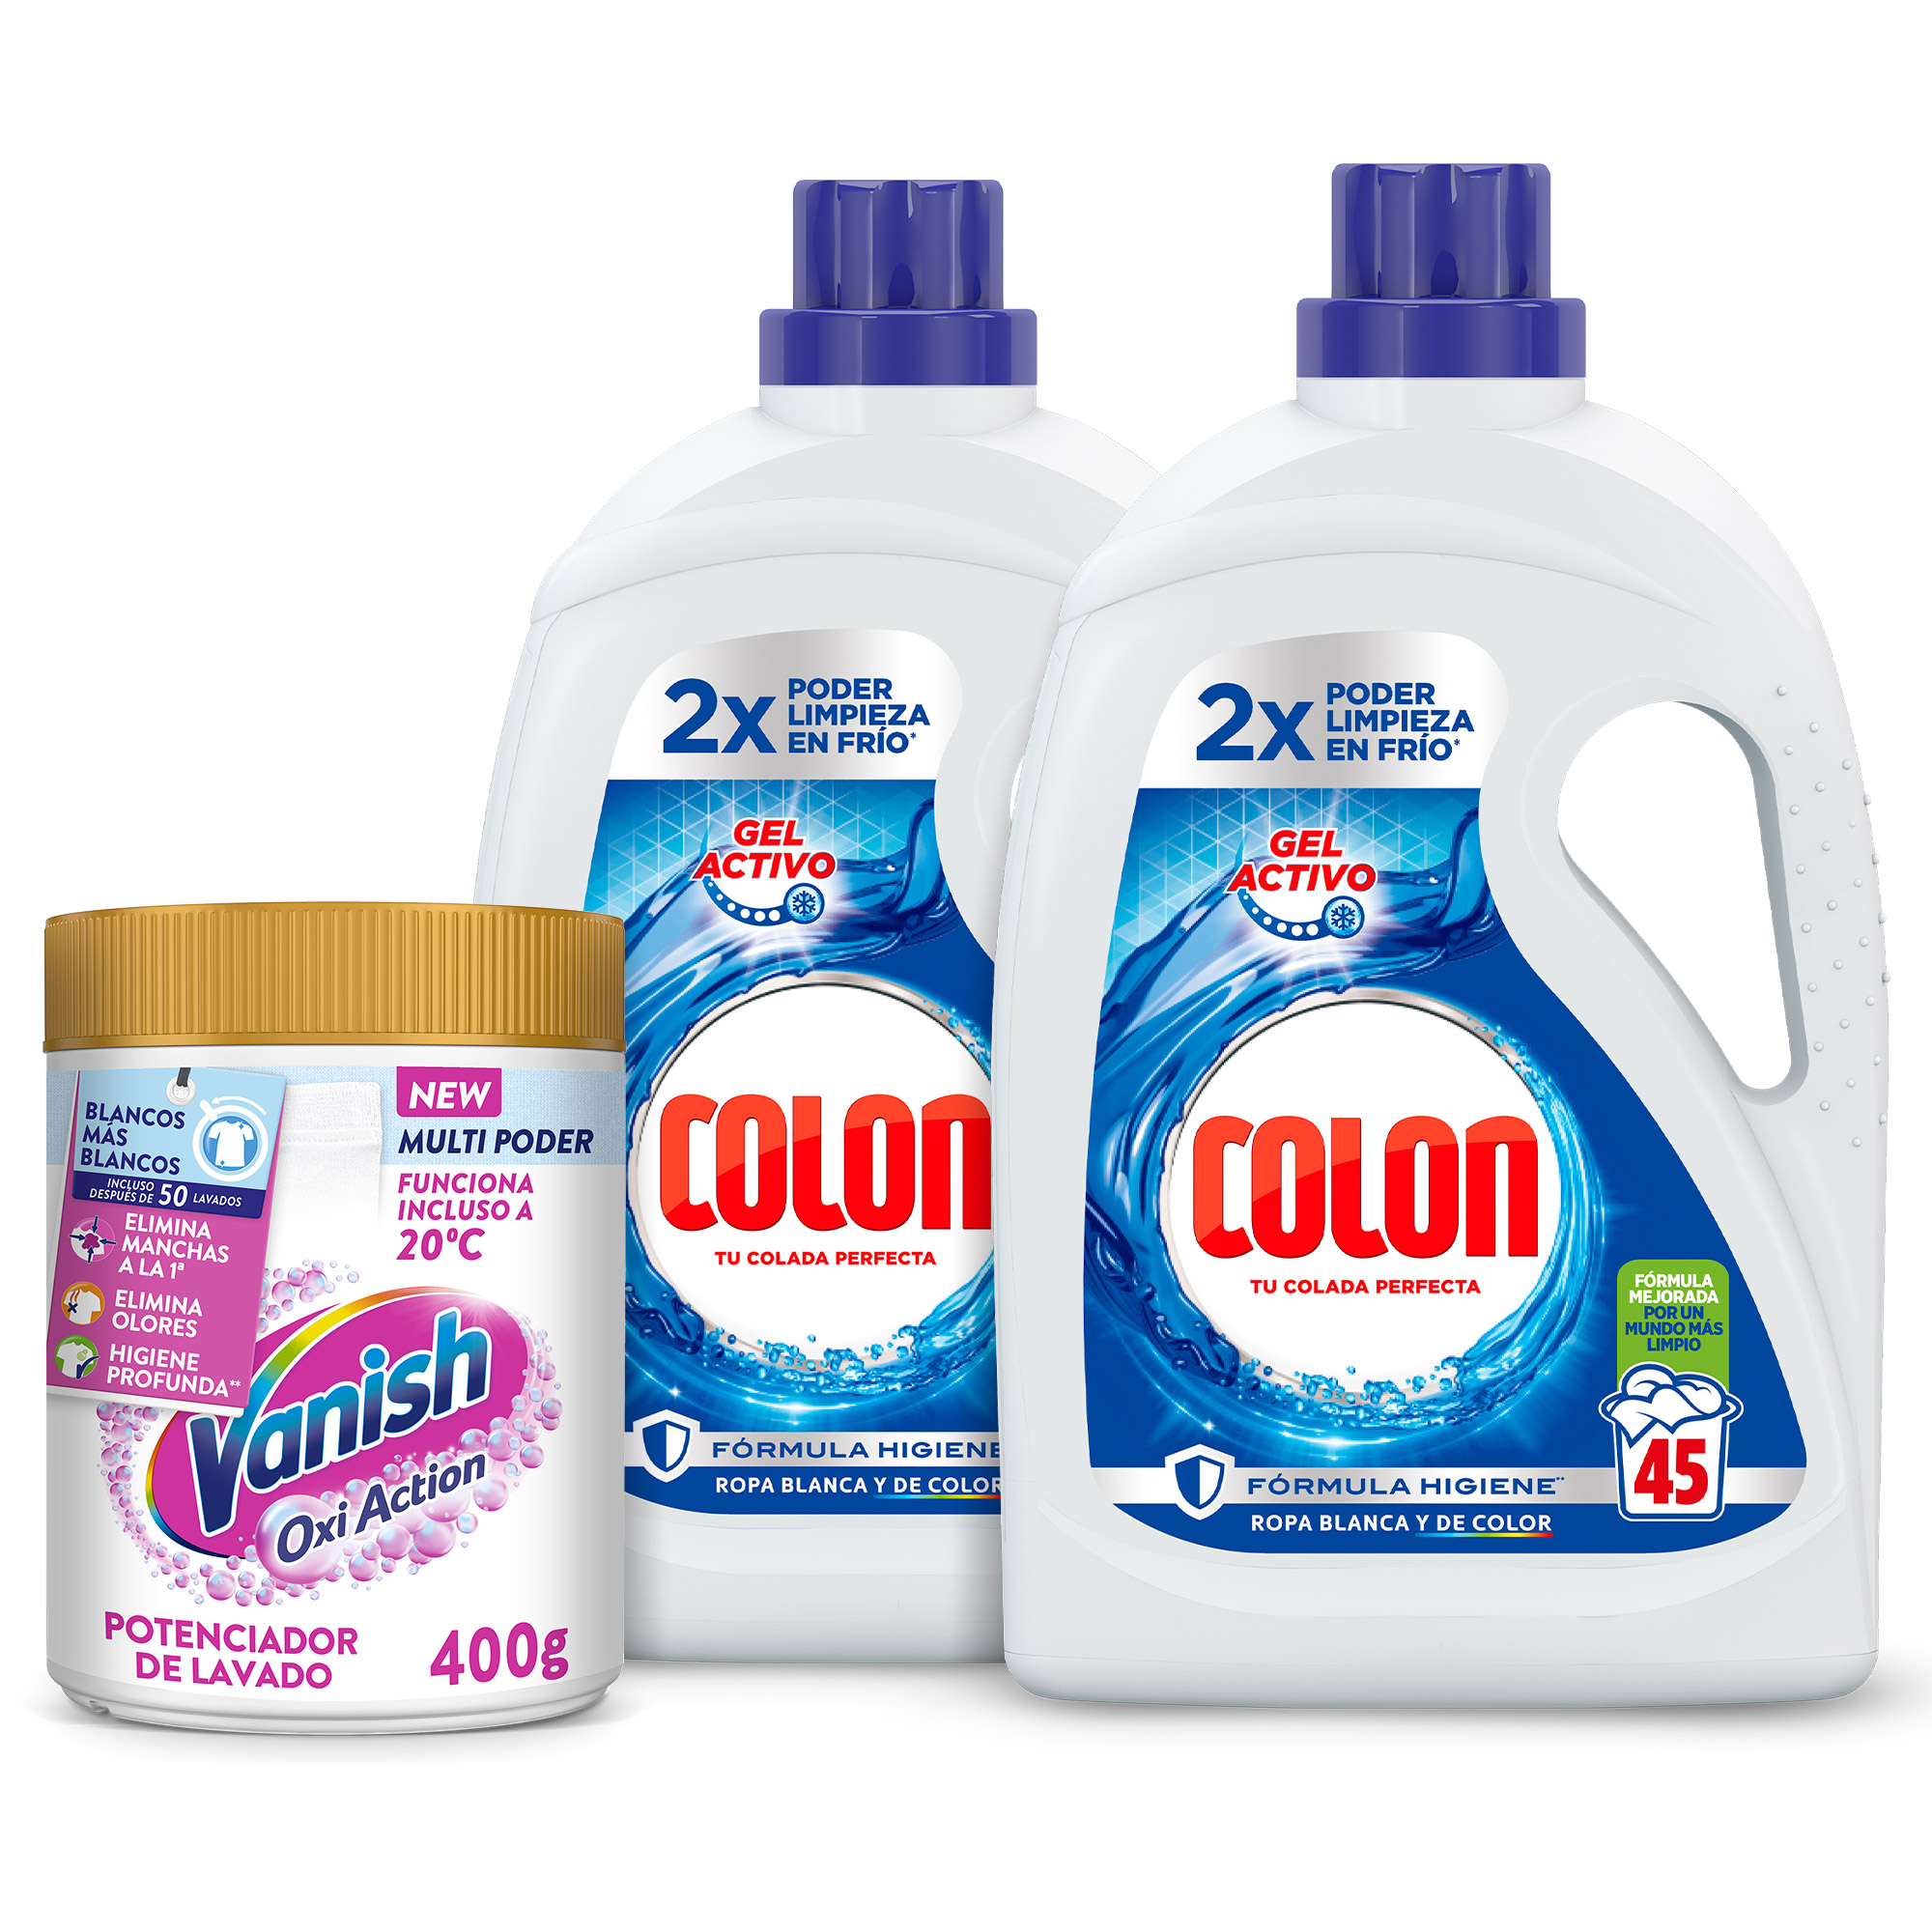 Colon Polvo Activo - Detergente para lavadora, adecuado para ropa blanca y  de color, formato polvo - 135 dosis